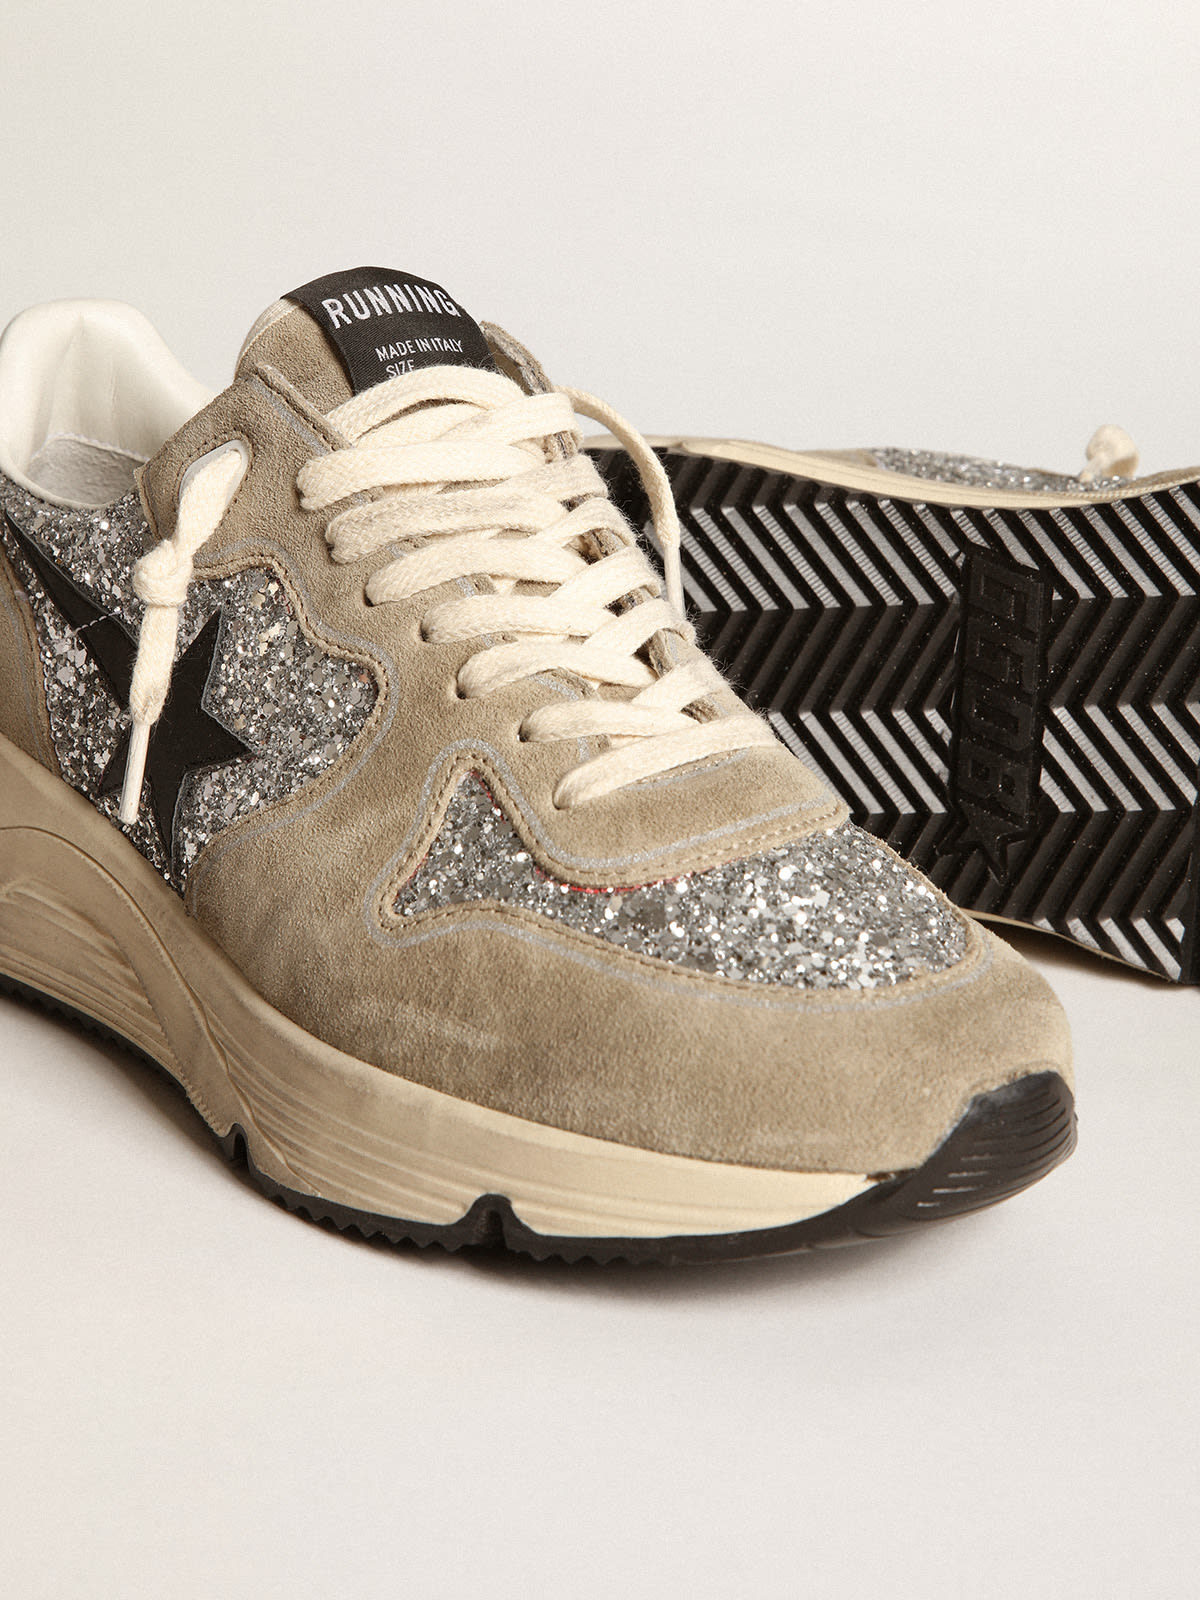 Golden Goose - Sneakers Running Sole à paillettes argentées et en daim couleur tourterelle avec étoile en cuir noir in 